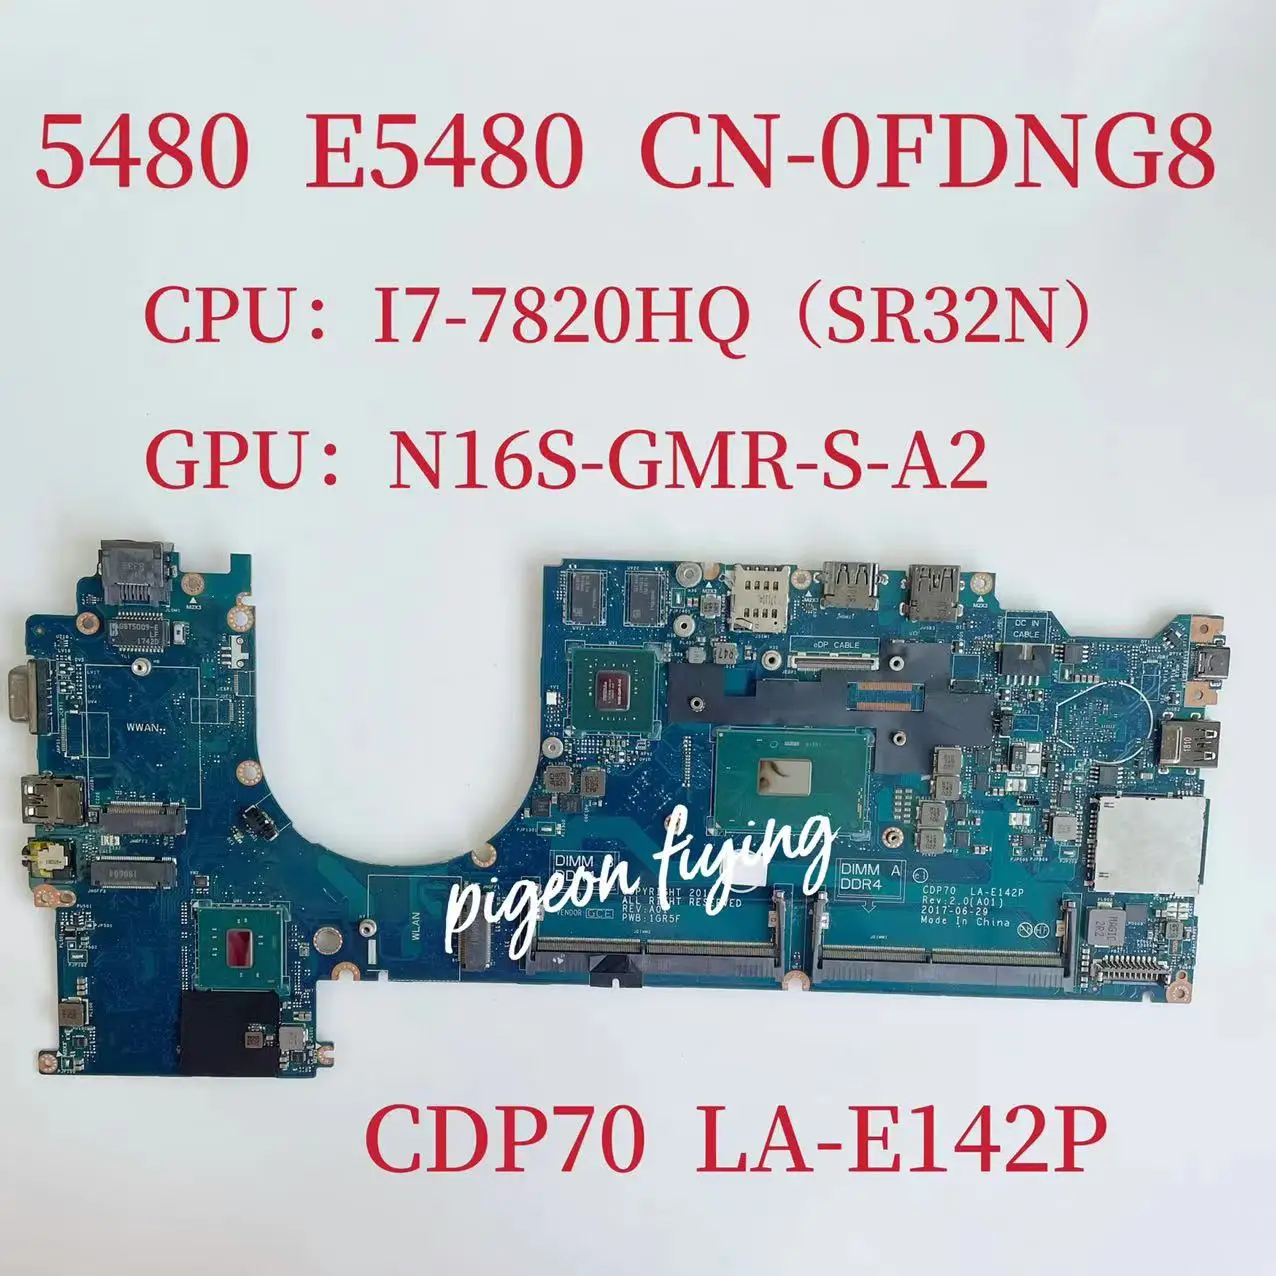 CDP70 LA-E142P дънна Платка за лаптоп Dell Latitude 5480 дънна Платка Процесор: I7-7820HQ Графичен процесор: N16S-GMR-S-A2 2G CN -0FDNG8 0FDNG8 FDNG8 Изображение 0 